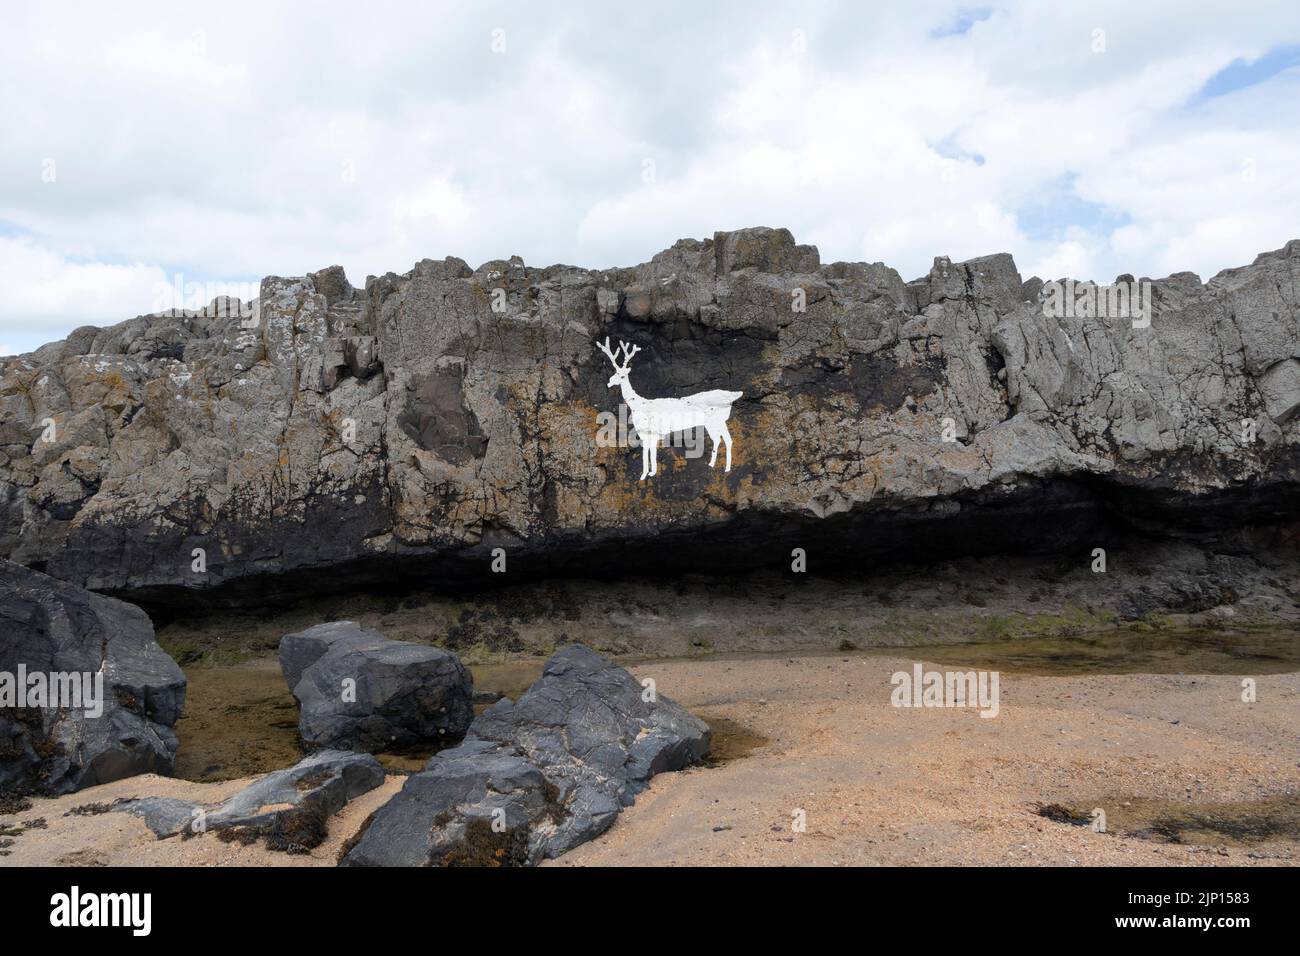 Cerf blanc peint sur les rochers de Blackrocks point (également connu sous le nom de Stag Rocks), Bamburgh, Northumberland, Royaume-Uni Banque D'Images